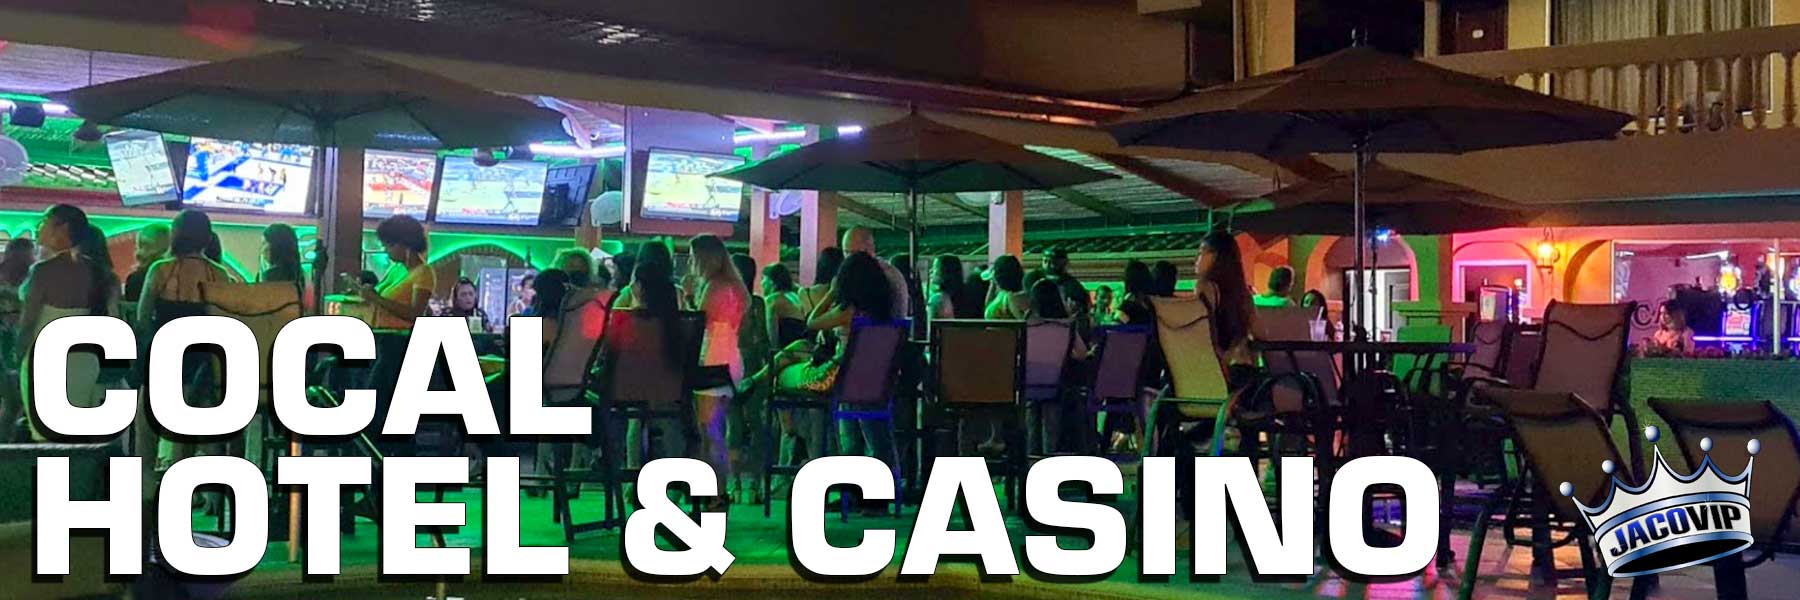 Casino Costa Rica